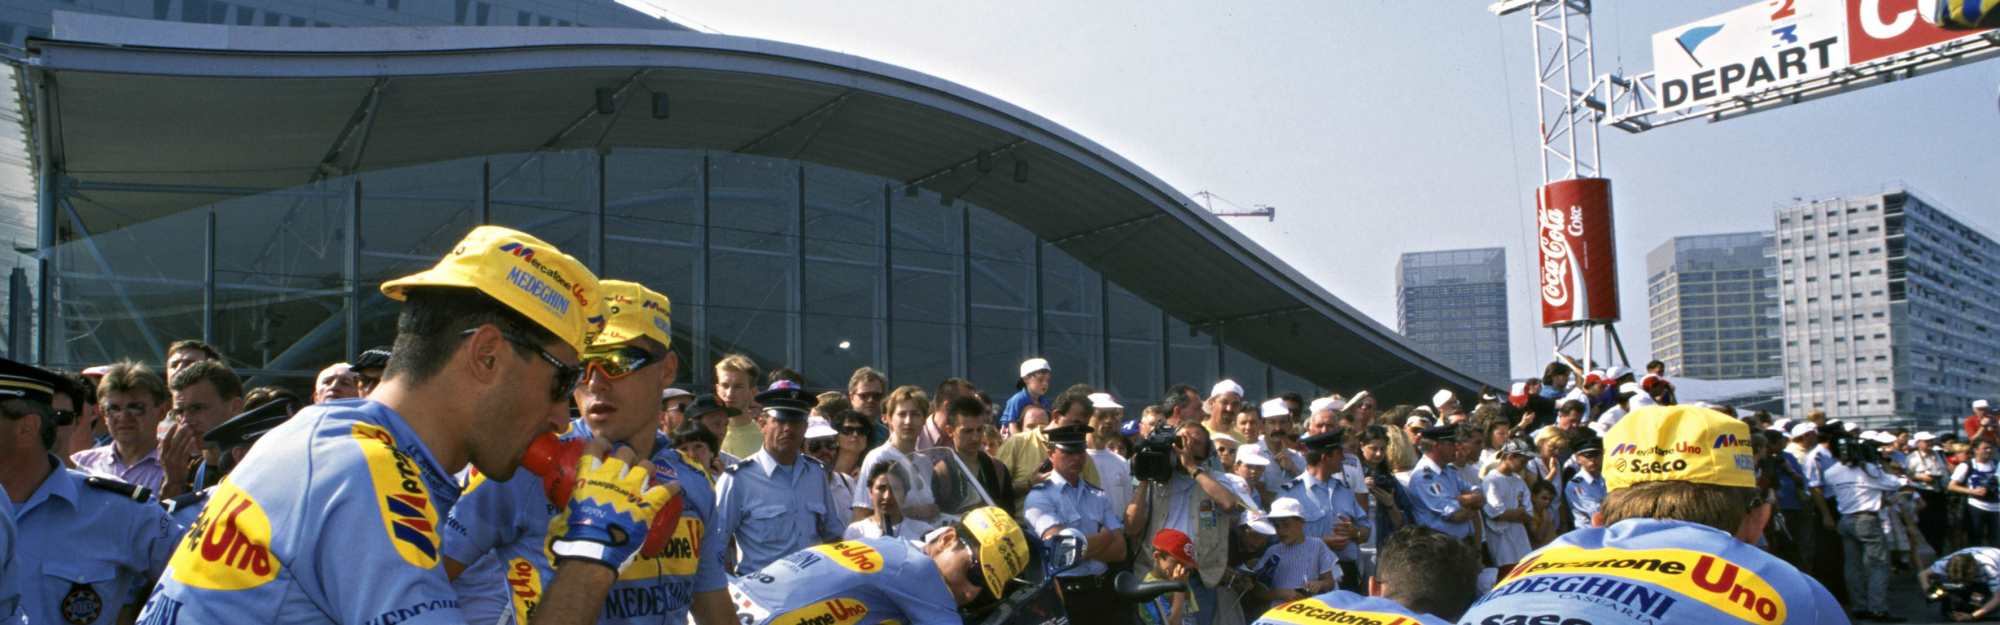 Départ du Tour de France à Lille en 1994